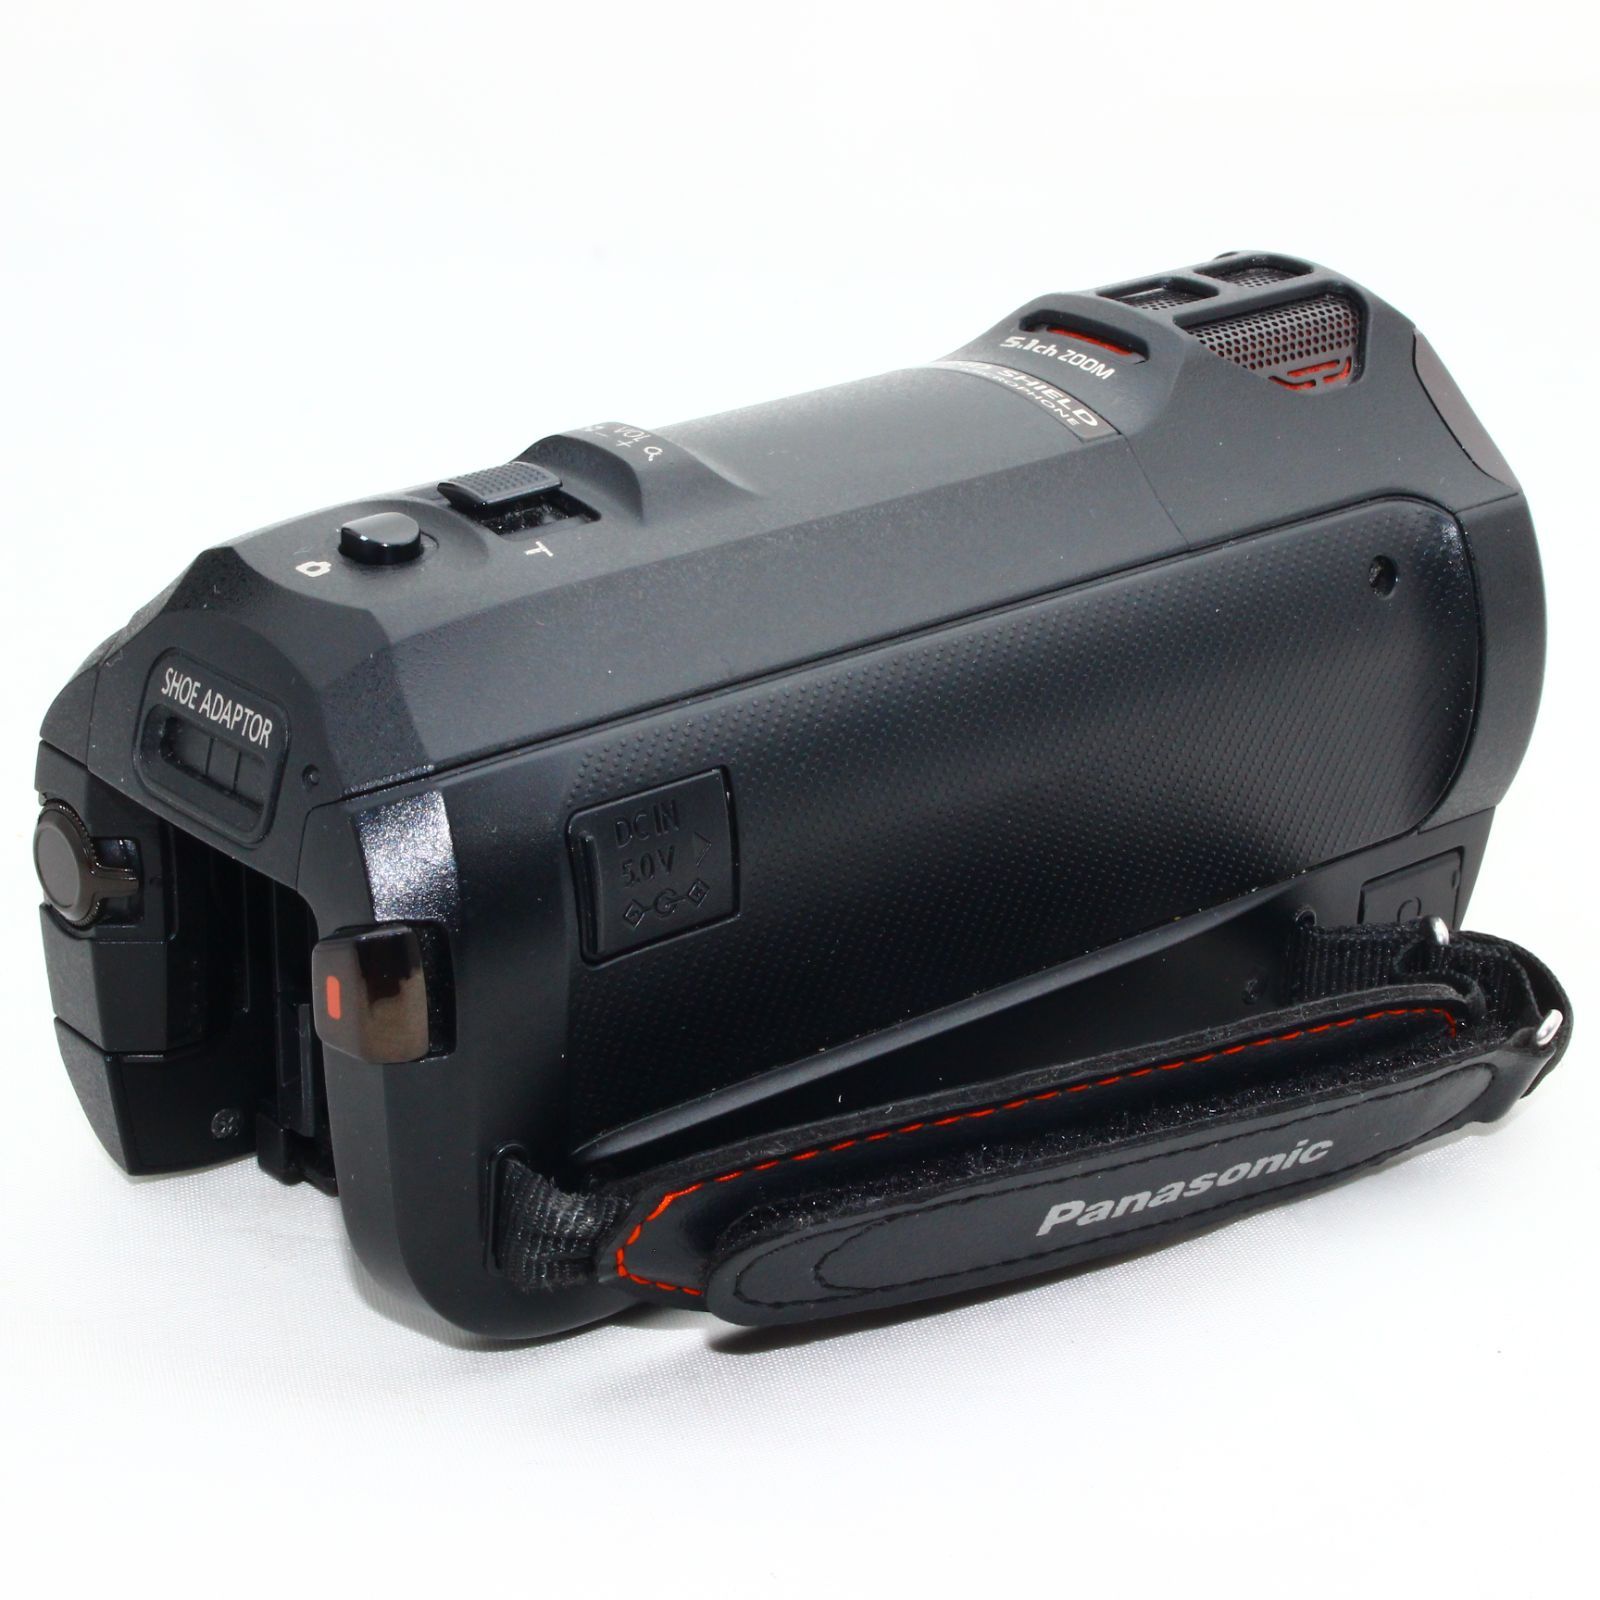 Panasonic ビデオカメラ HC-WX990M-K